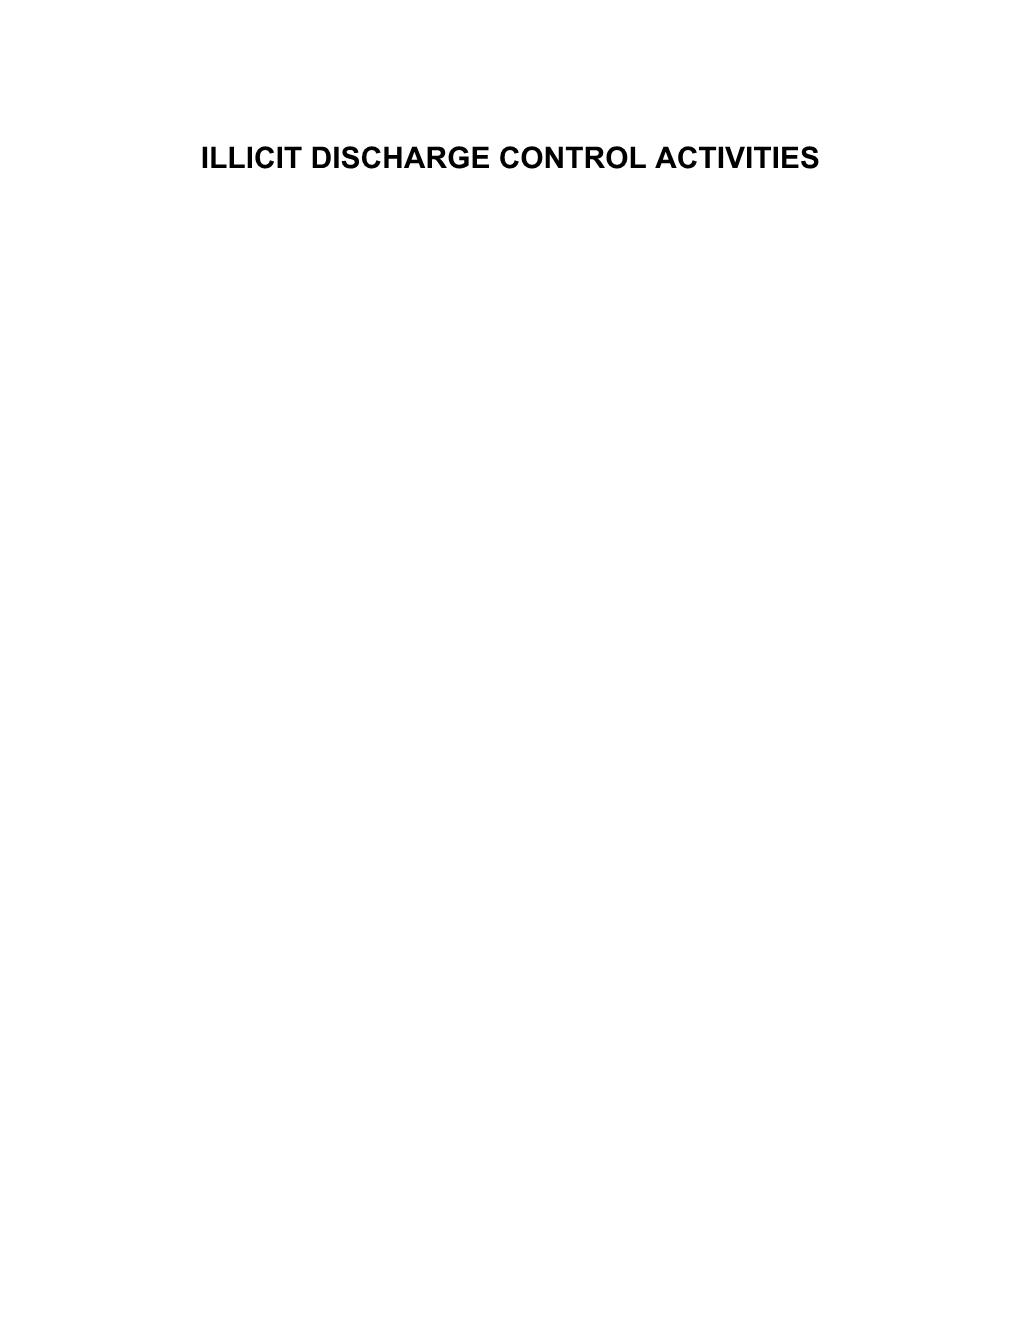 Illicit Discharge Control Activities s1